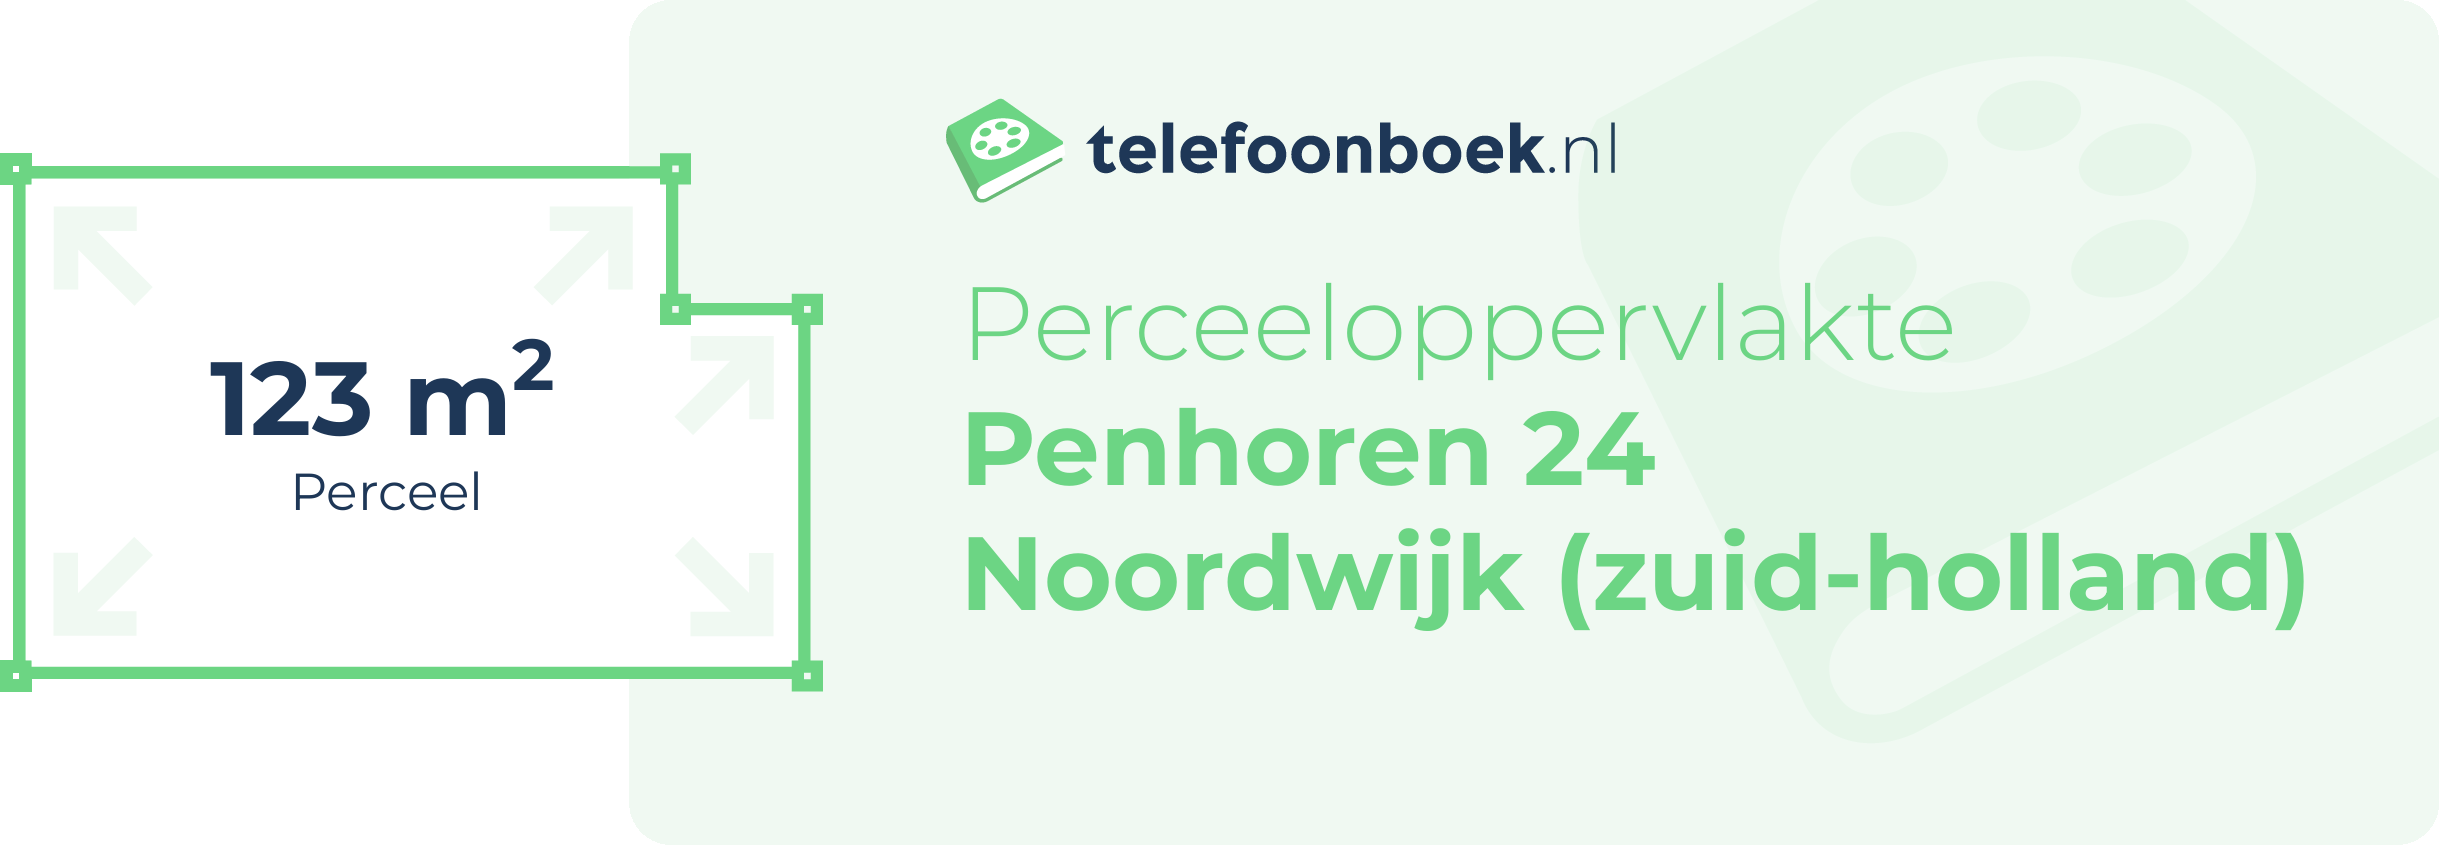 Perceeloppervlakte Penhoren 24 Noordwijk (Zuid-Holland)